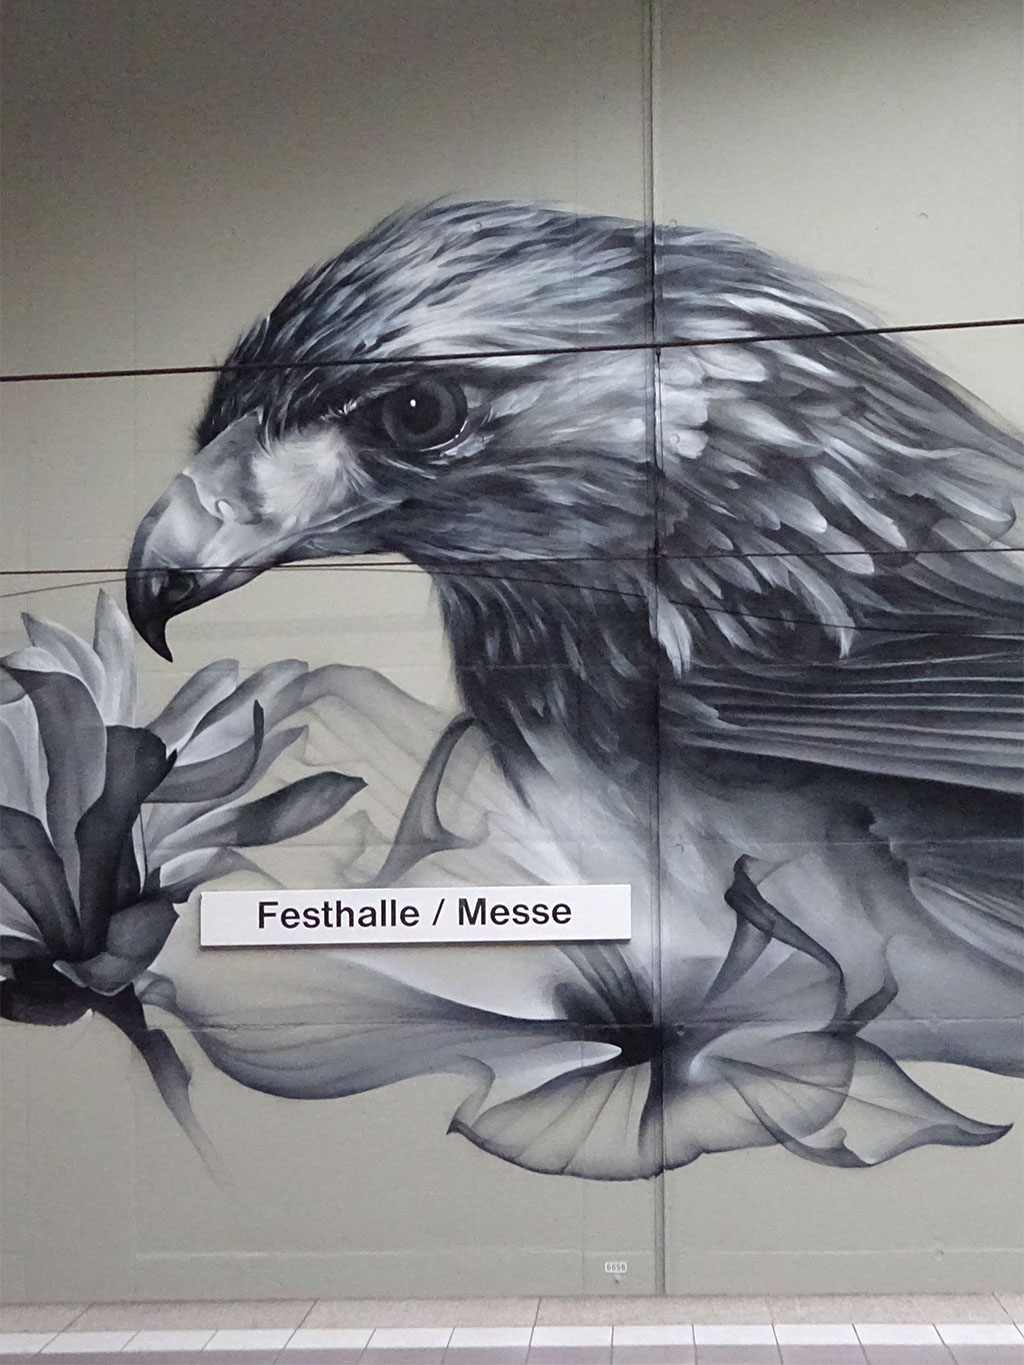 Großes Partnerstädte-Wandbild in U-Bahn-Station Festhalle/Messe in Frankfurt zeigt Adler (für Frankfurt) und Waschbär (für Toronto)